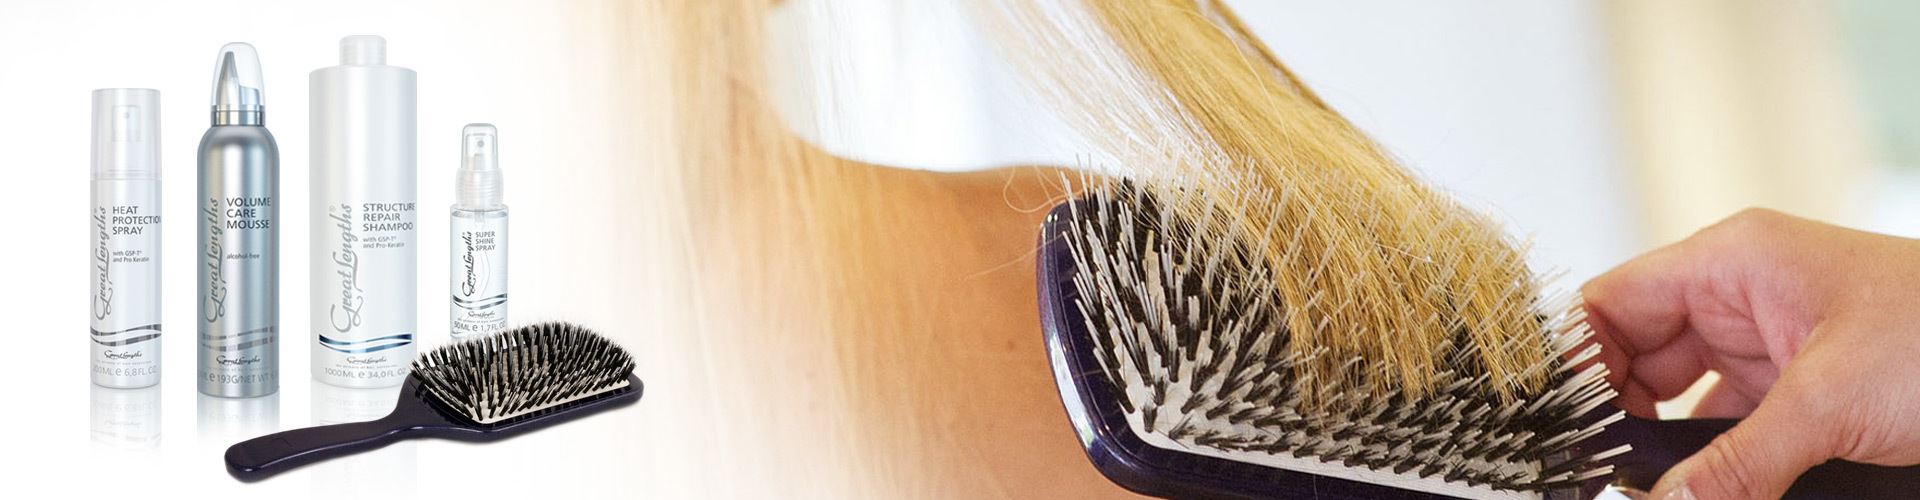 Haarpflegeprodukte und Bürsten von Great Lengths - damit Extensions optimal gepflegt werden (© Great Lengths)